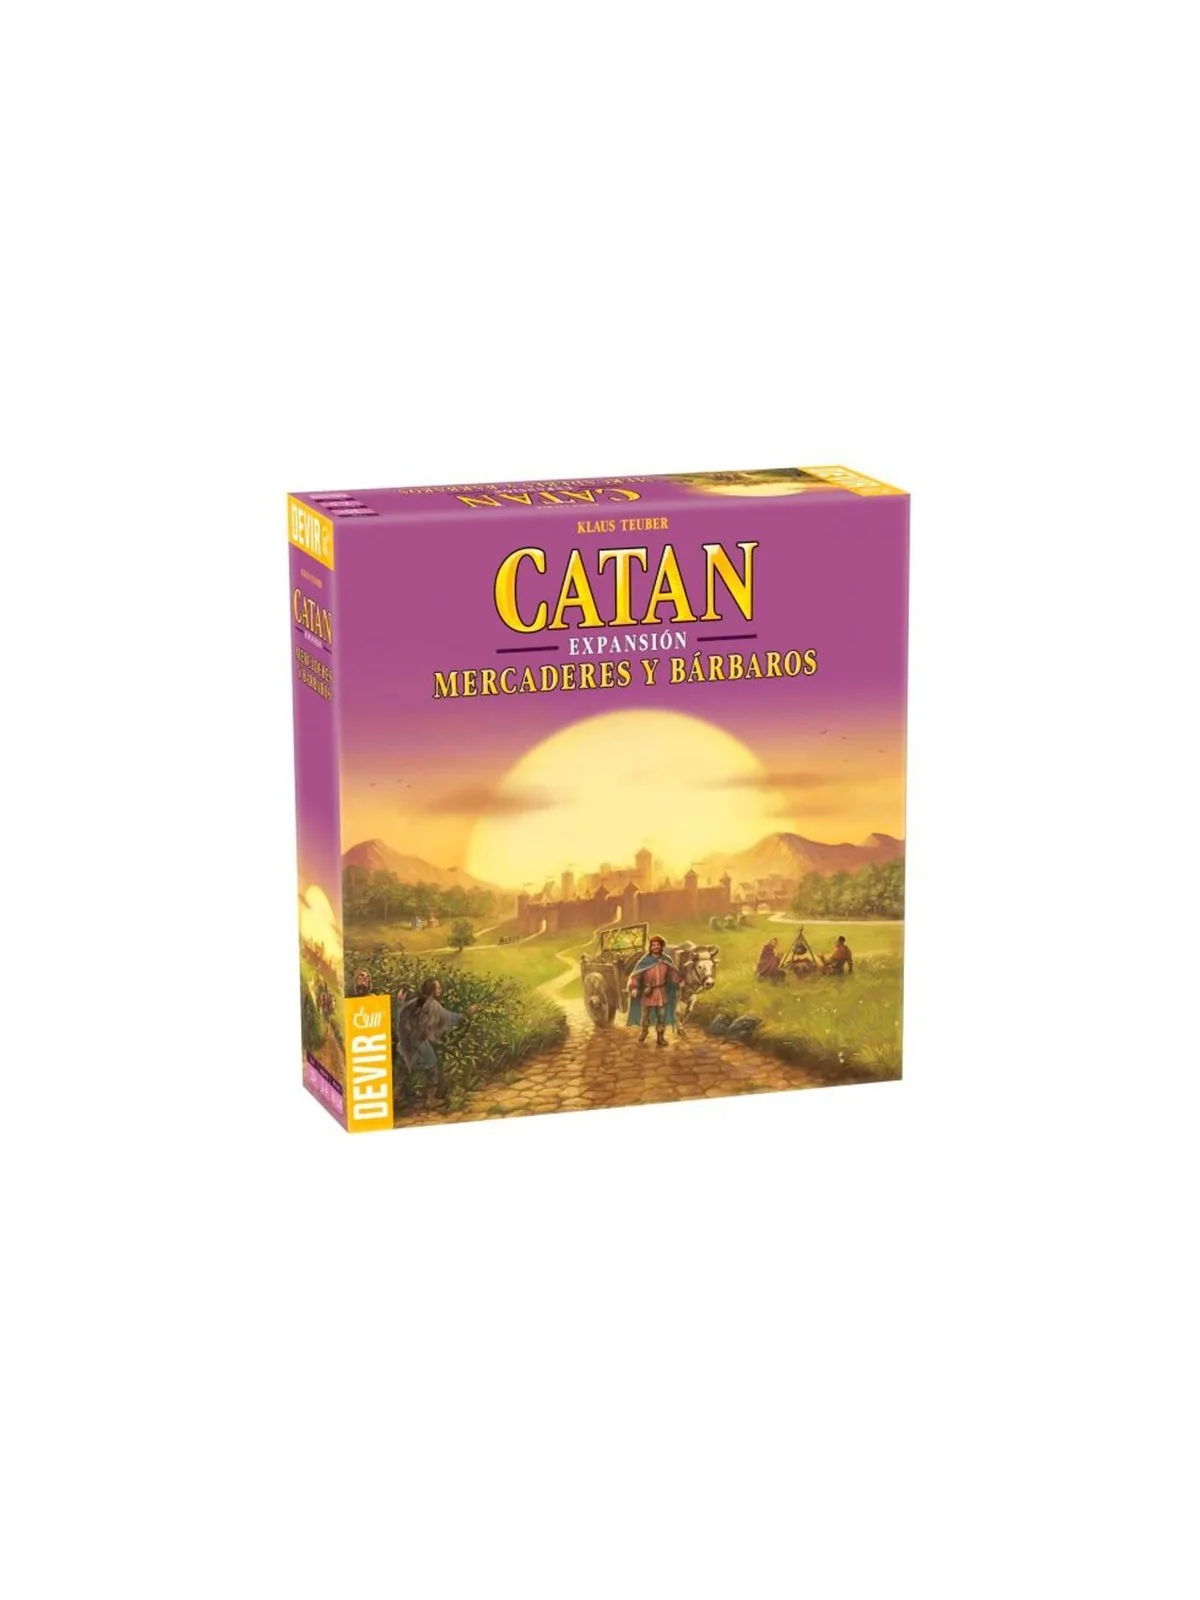 Comprar Catan: Mercaderes y Barbaros de Catan barato al mejor precio 4